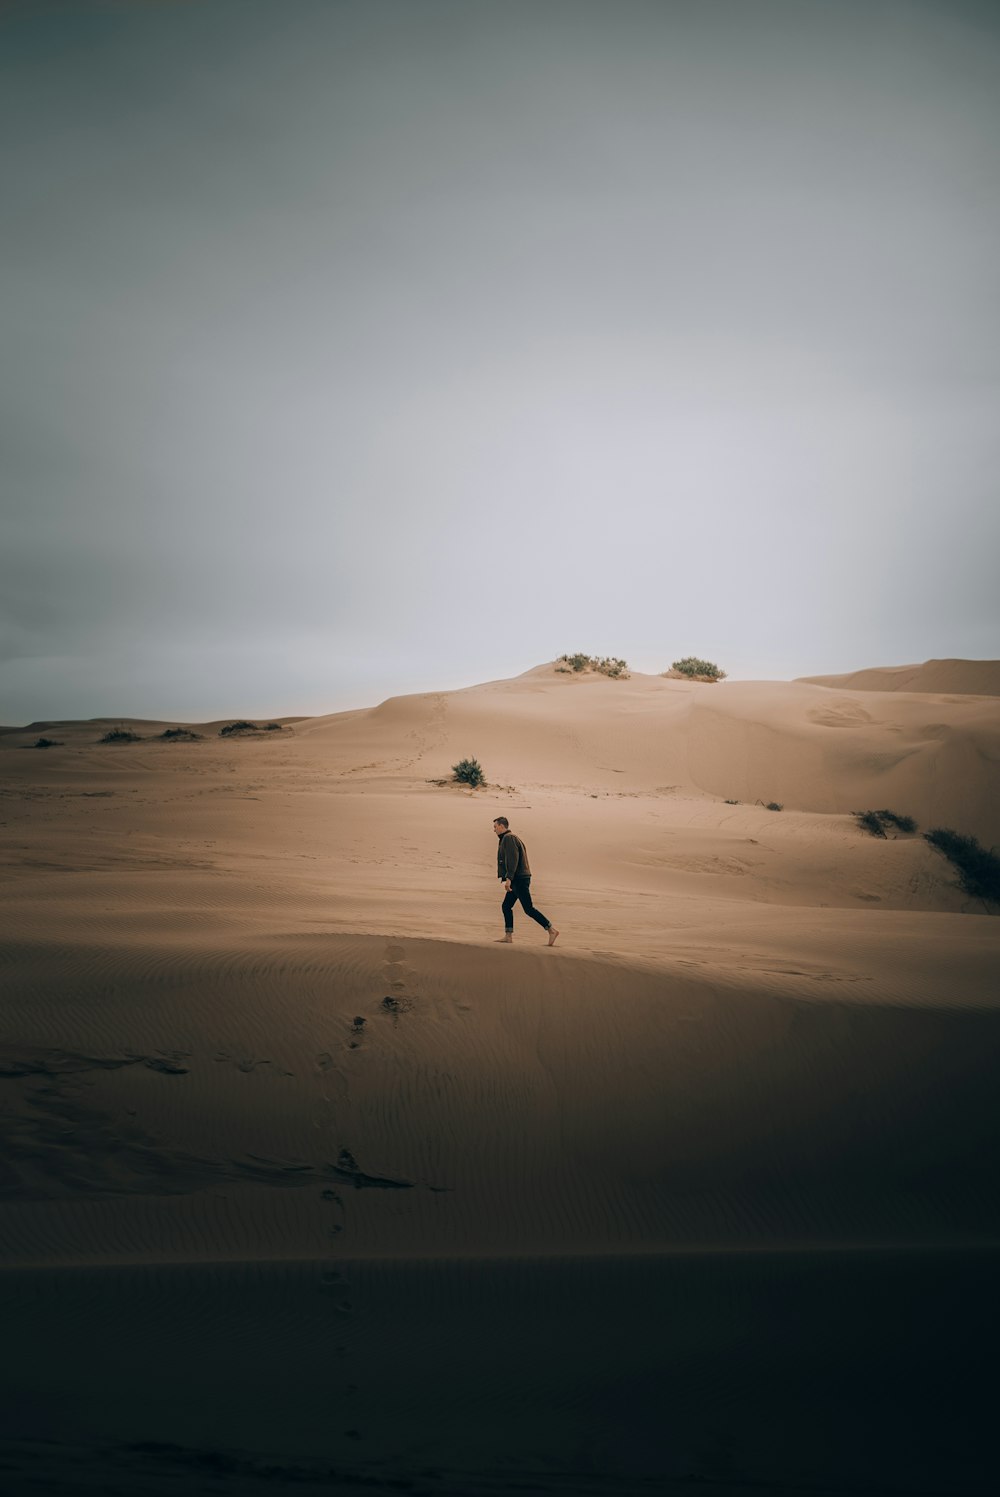 a man walking across a sandy desert under a cloudy sky